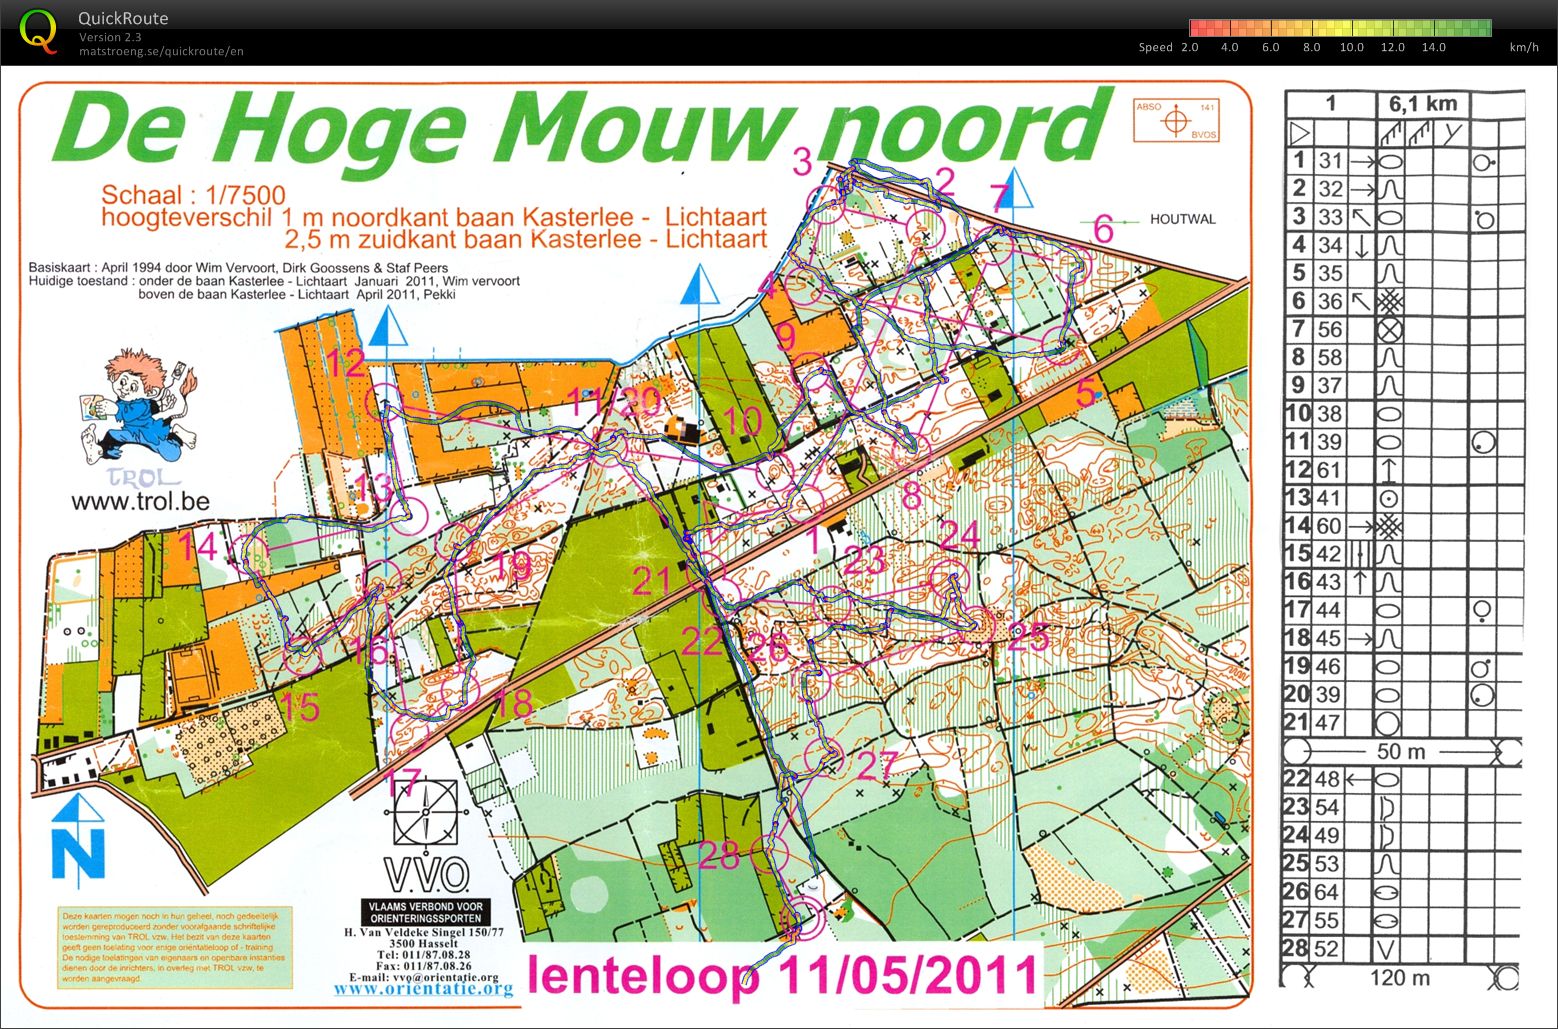 Lenteloop Hoge Mouw noord (11/05/2011)